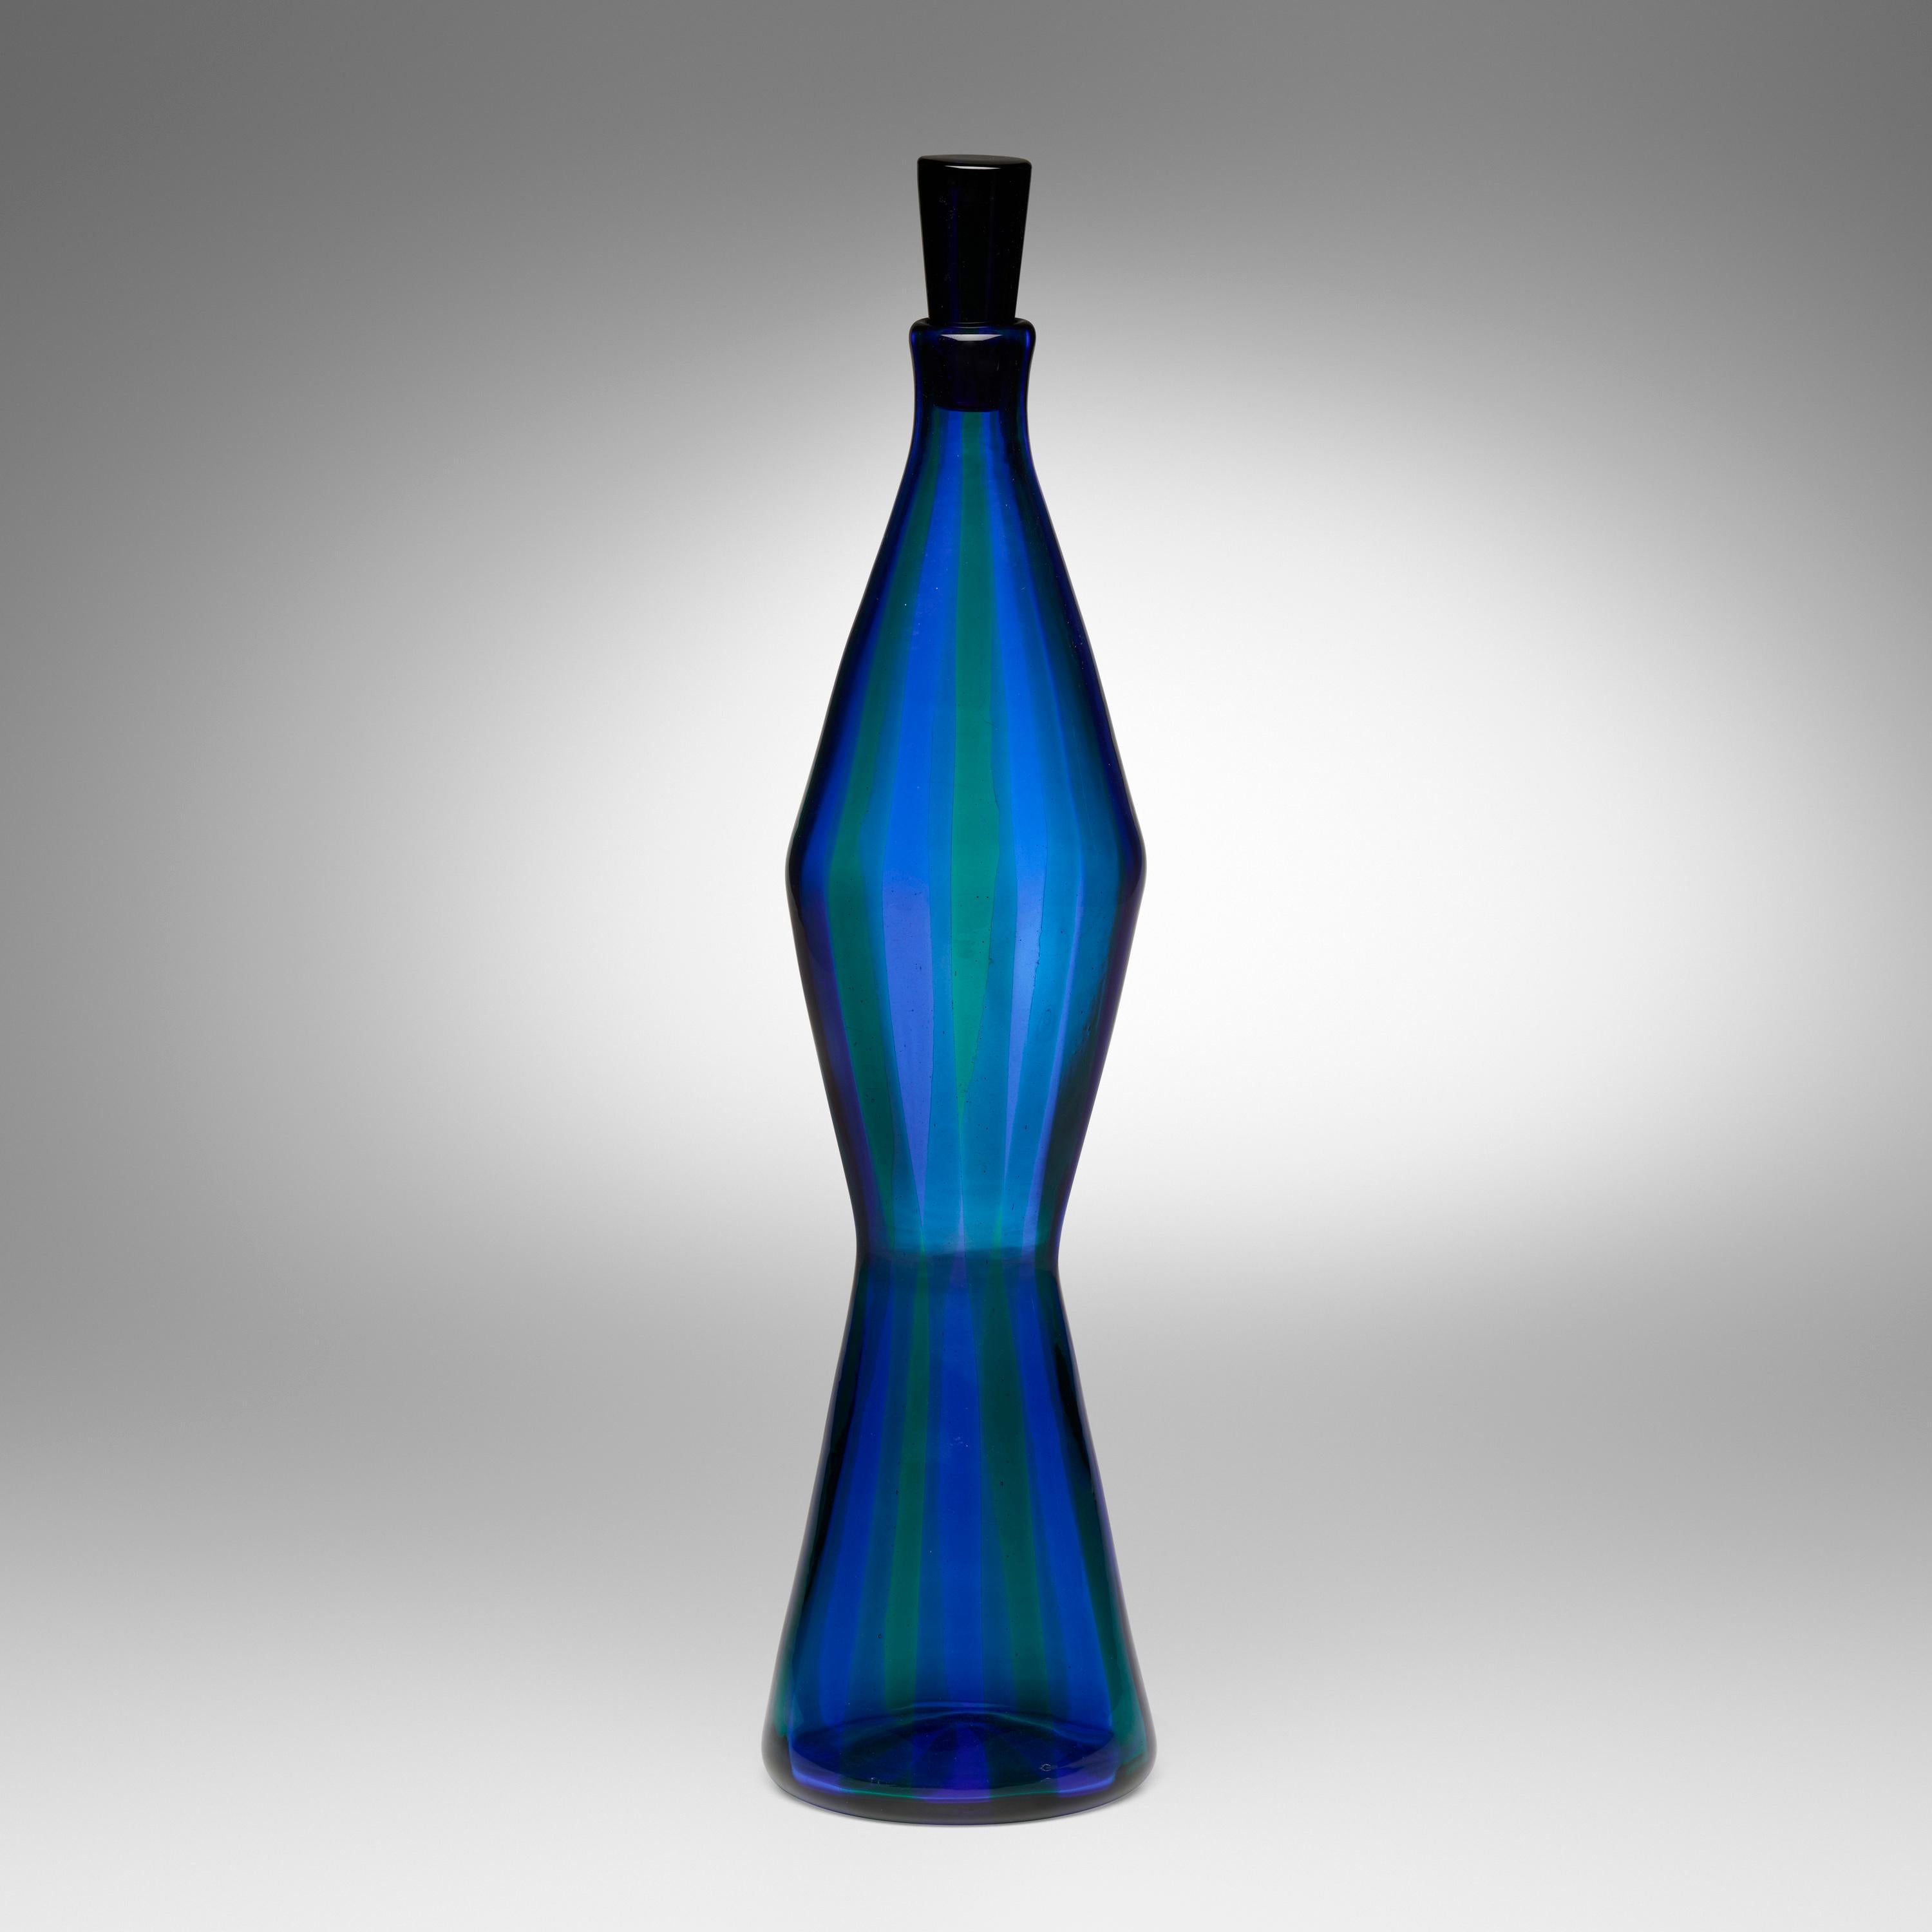 Blaugrün gestreifte Glasflasche 